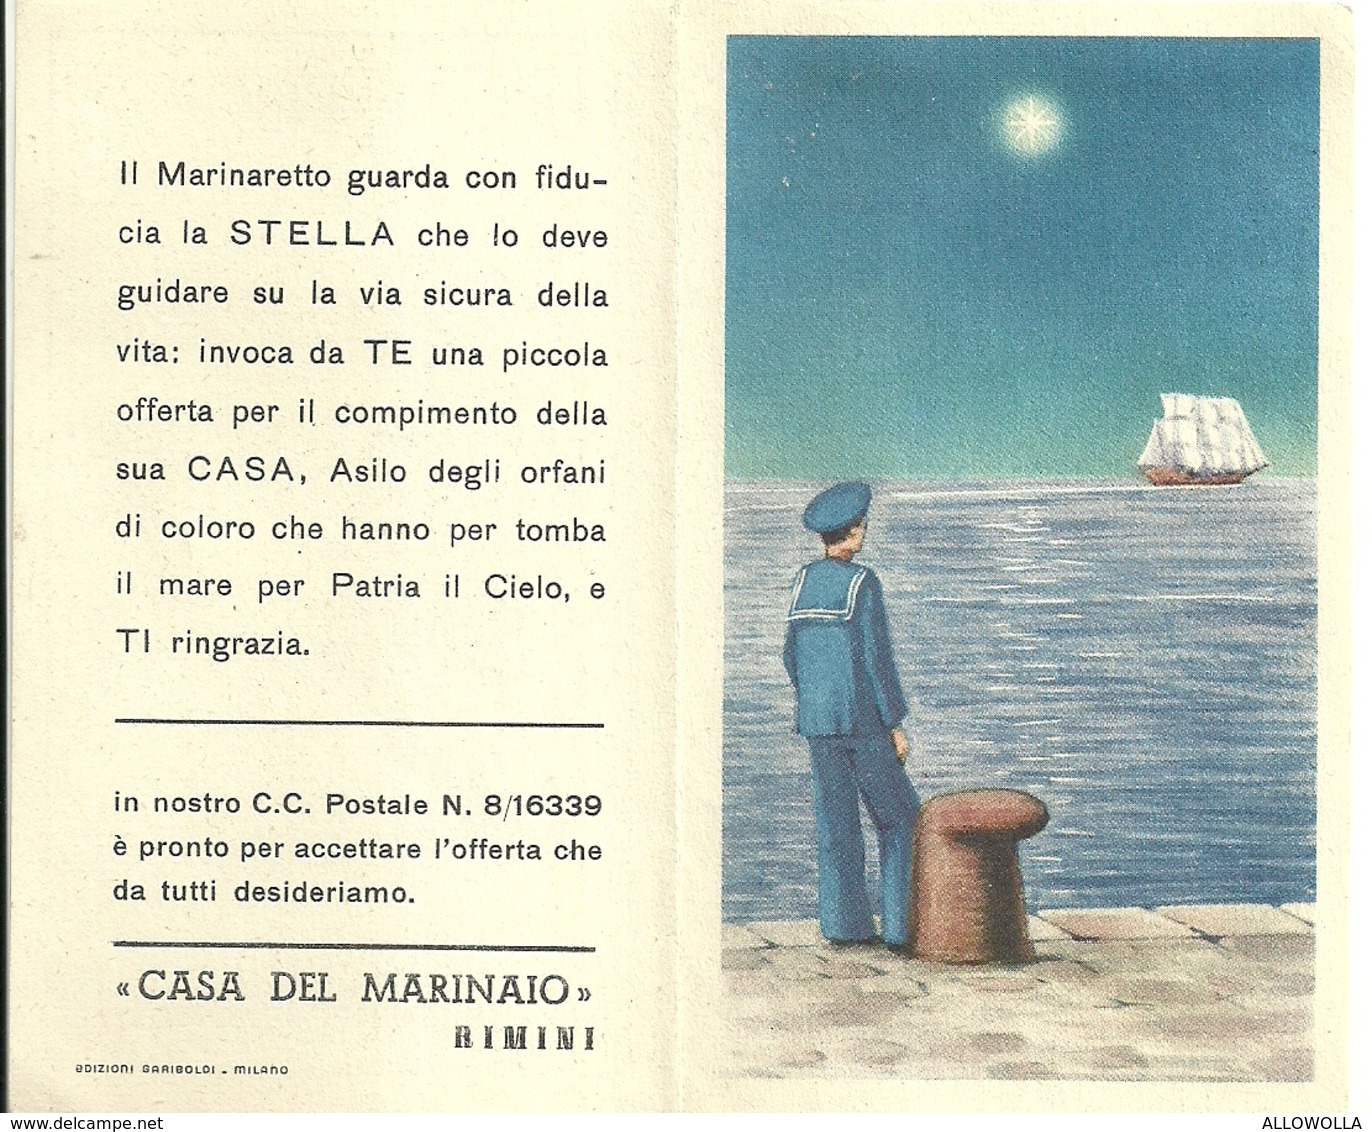 2037 " CALENDARIO 1954-CASA DEL MARINAIO - RIMINI "  ORIGINALE - Formato Piccolo : 1941-60